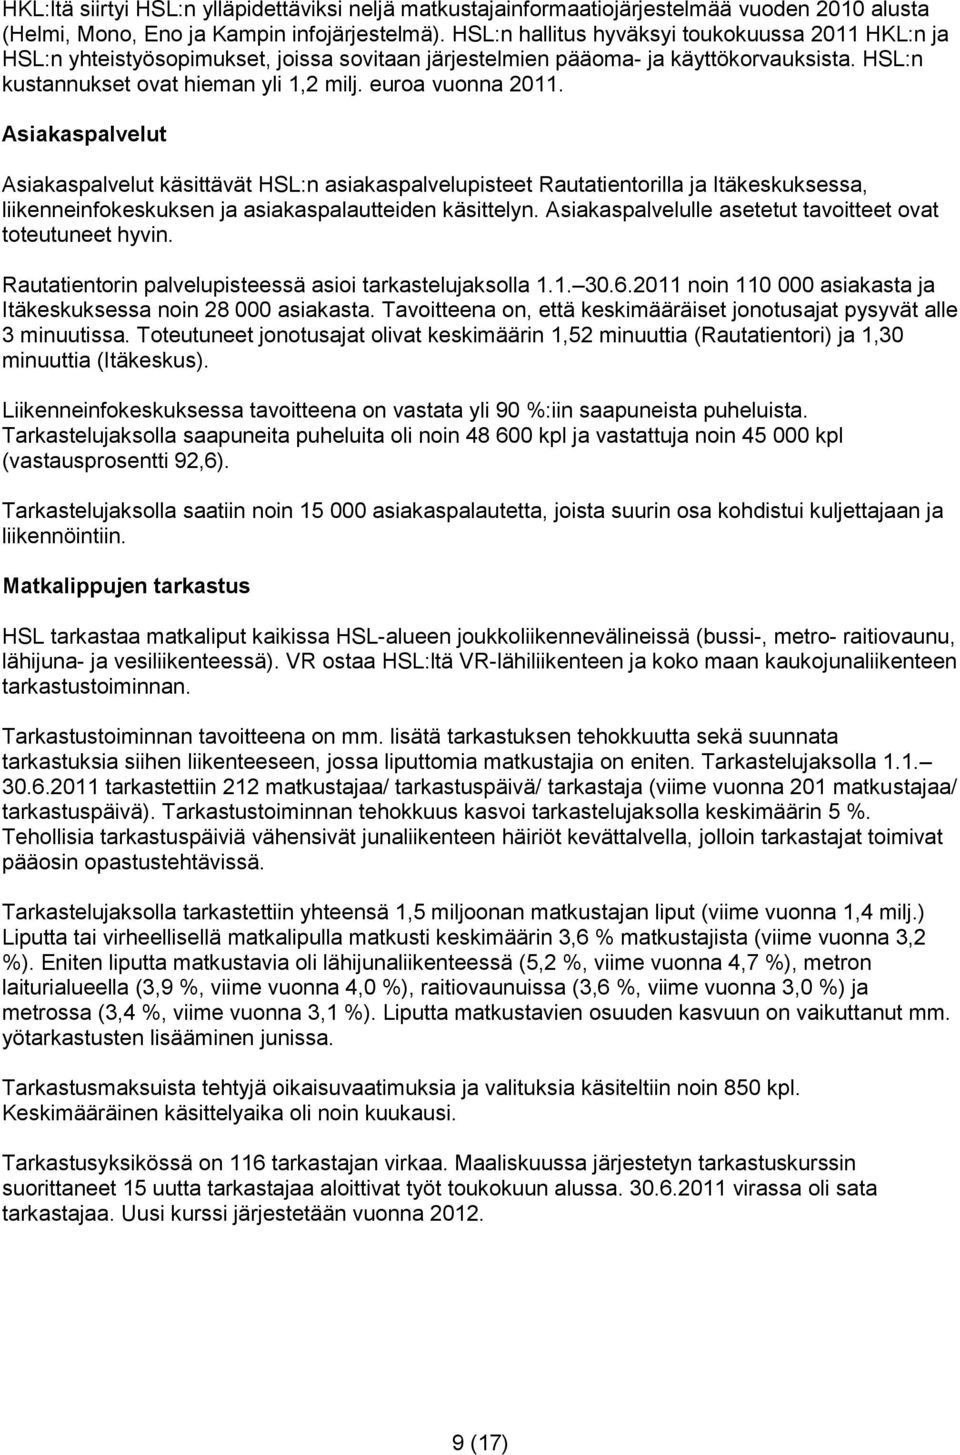 euroa vuonna 2011. Asiakaspalvelut Asiakaspalvelut käsittävät HSL:n asiakaspalvelupisteet Rautatientorilla ja Itäkeskuksessa, liikenneinfokeskuksen ja asiakaspalautteiden käsittelyn.